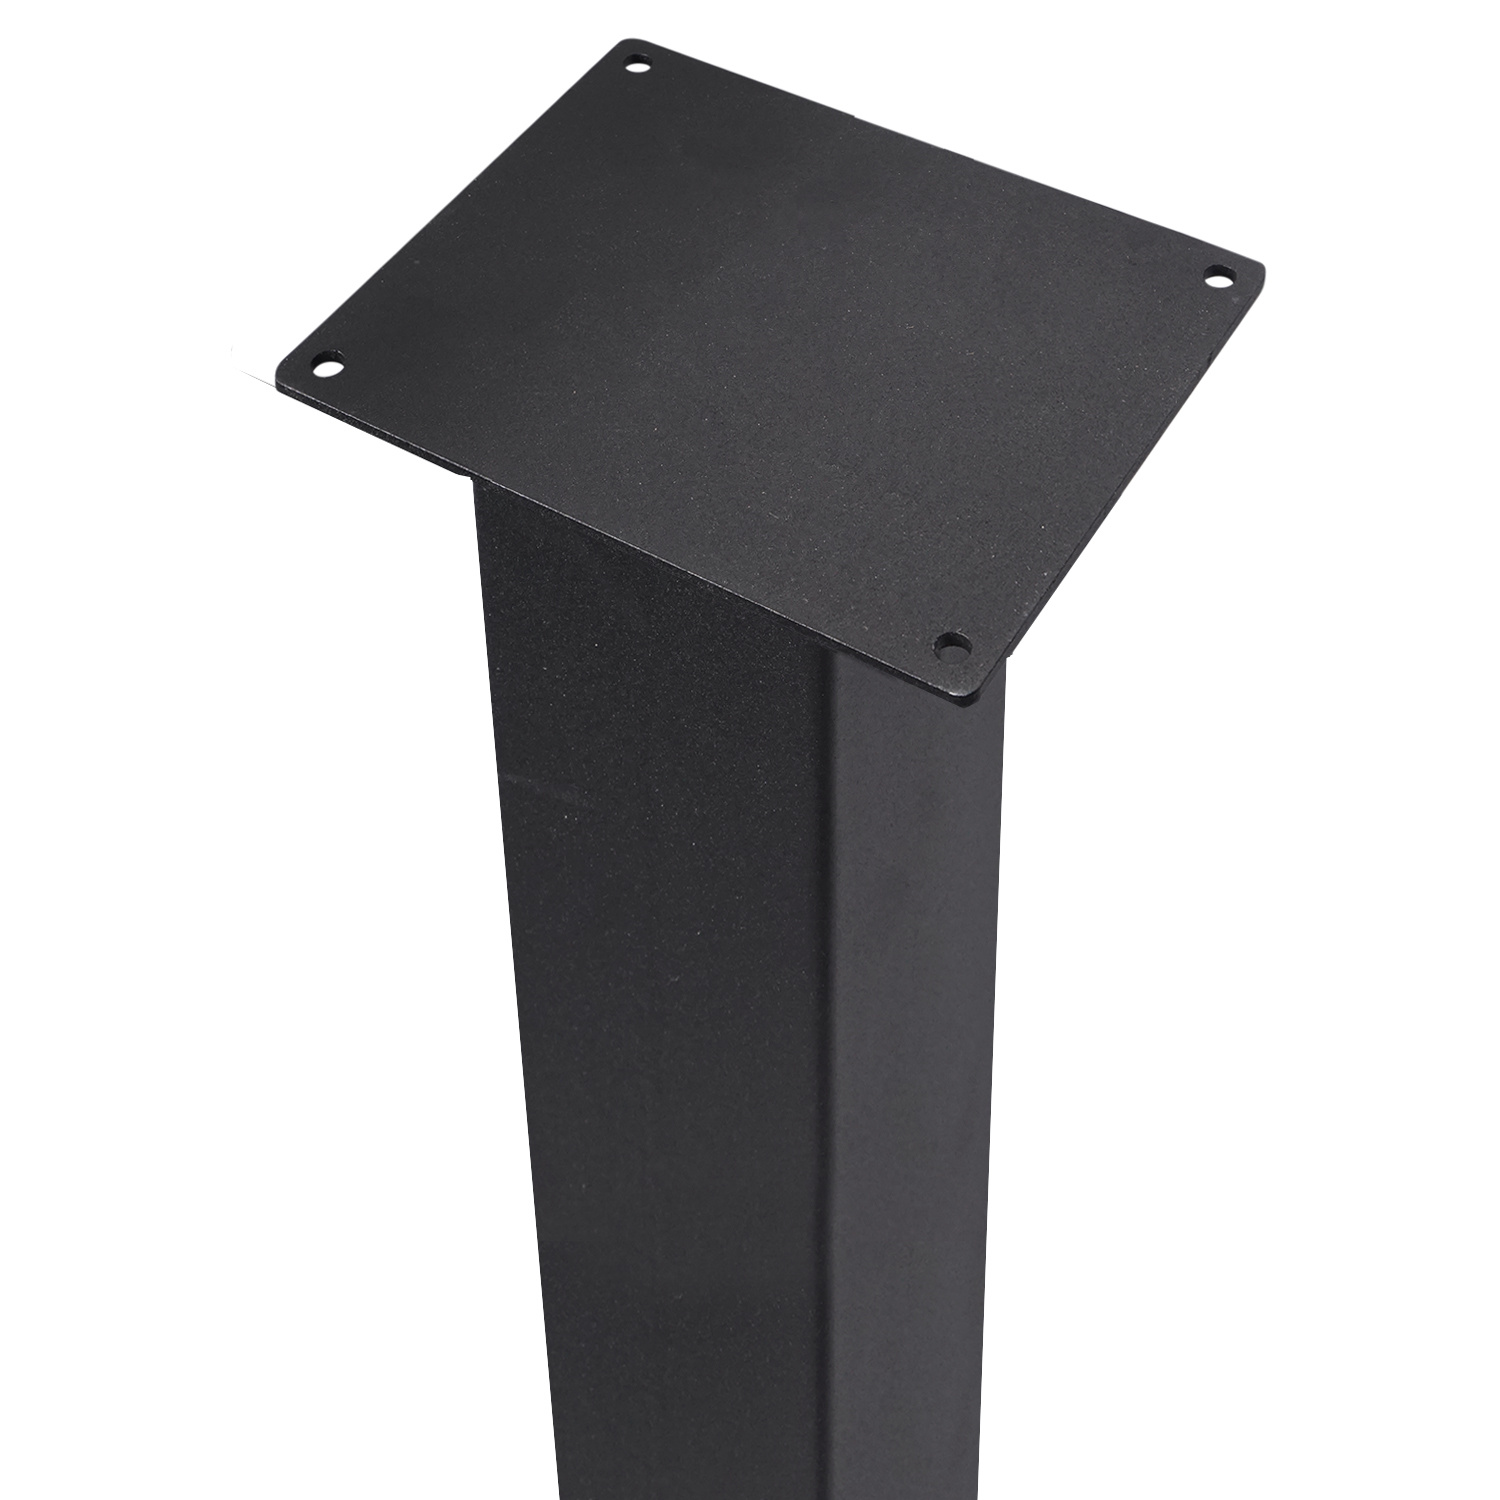  Tischbeine Metall 10x10 cm SET (4 Stück) - 72 cm hoch - Tischkufen / Tischgestell beschichtet - Schwarz